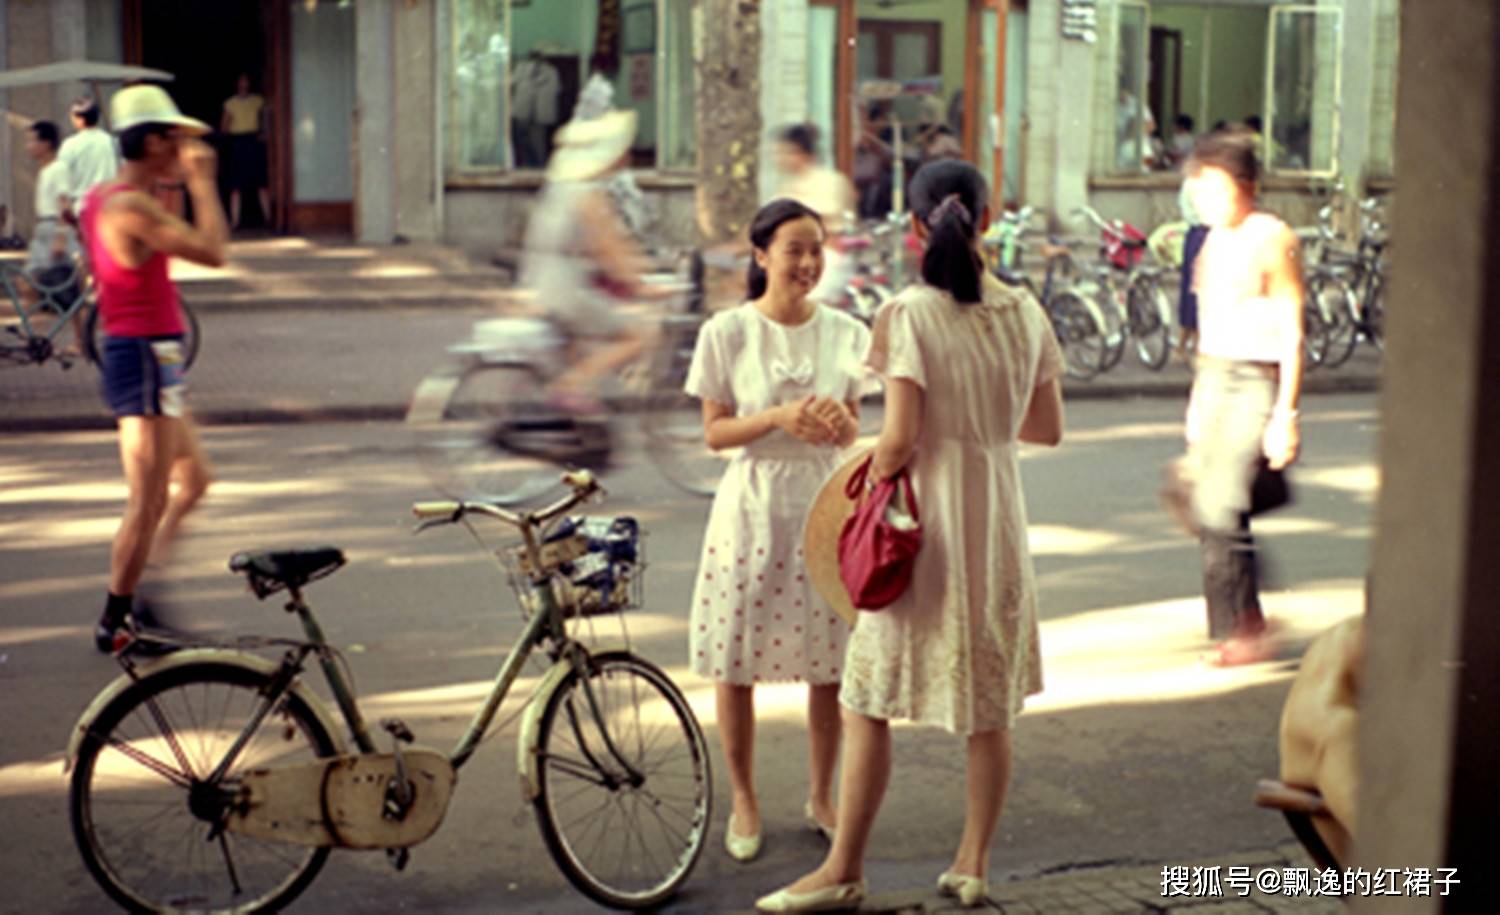 老照片:1982年的杭州,这才是记忆中的老杭州